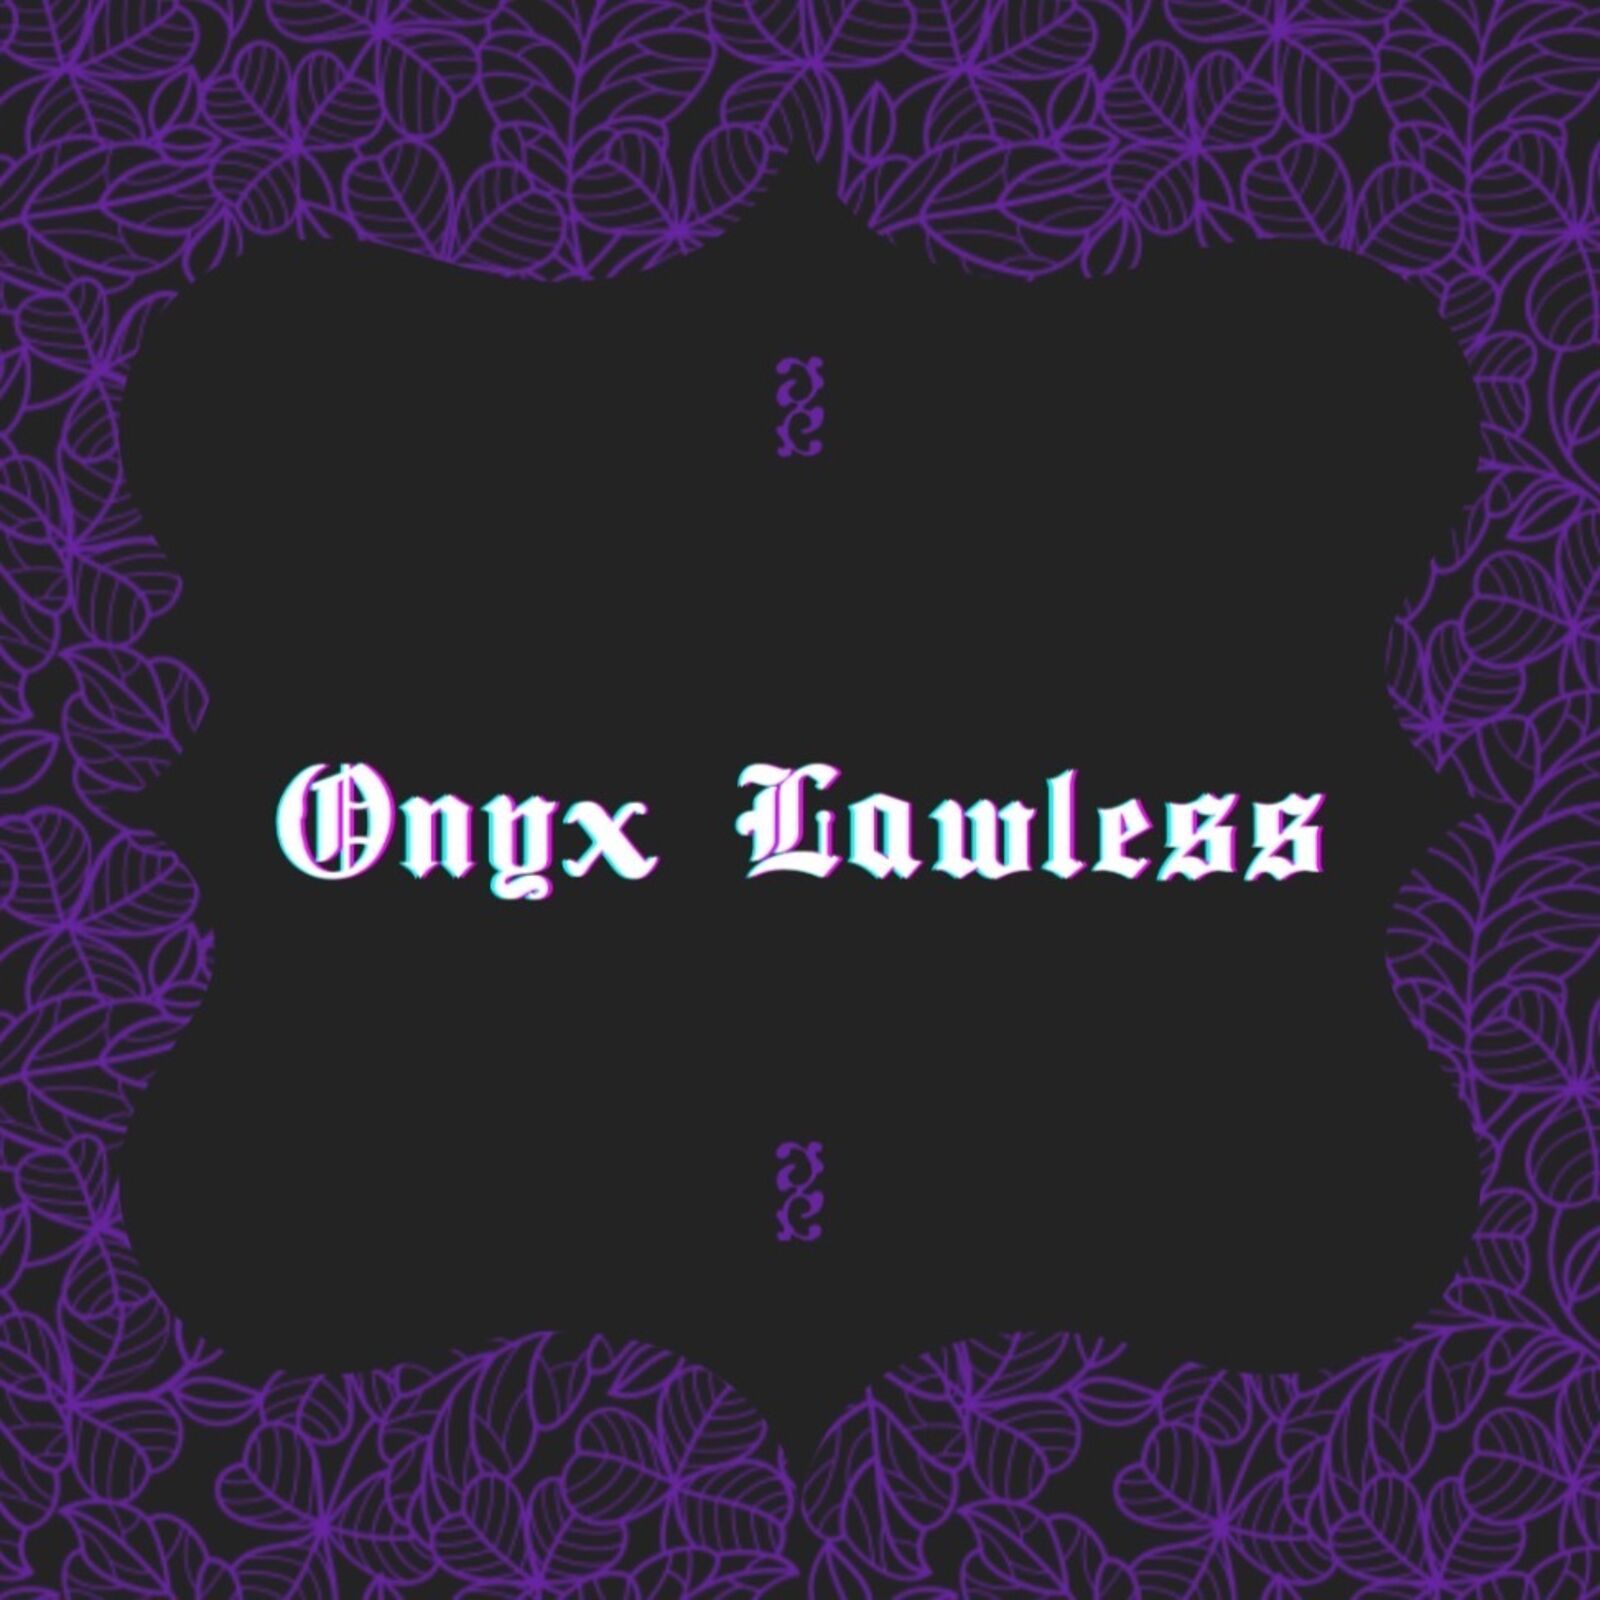 onyxlawless